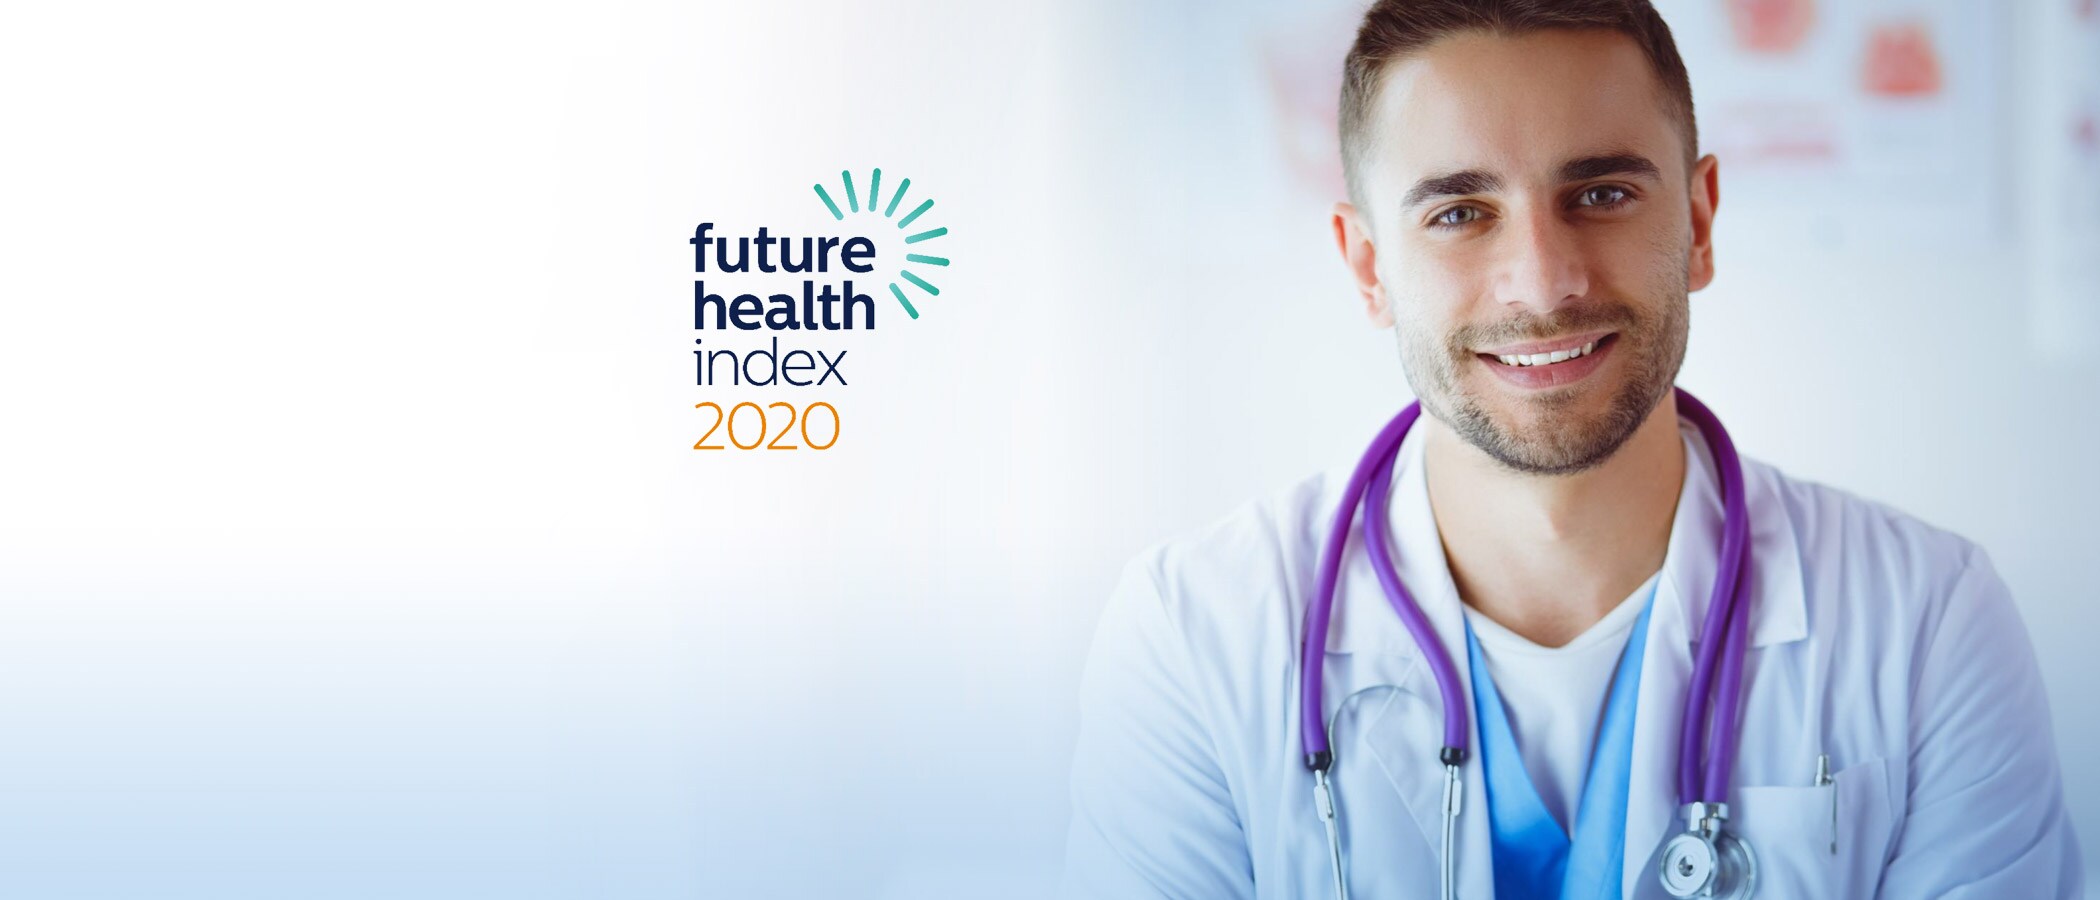 Future Health Index entrevista pela primeira vez jovens profissionais de saúde para entender suas percepções